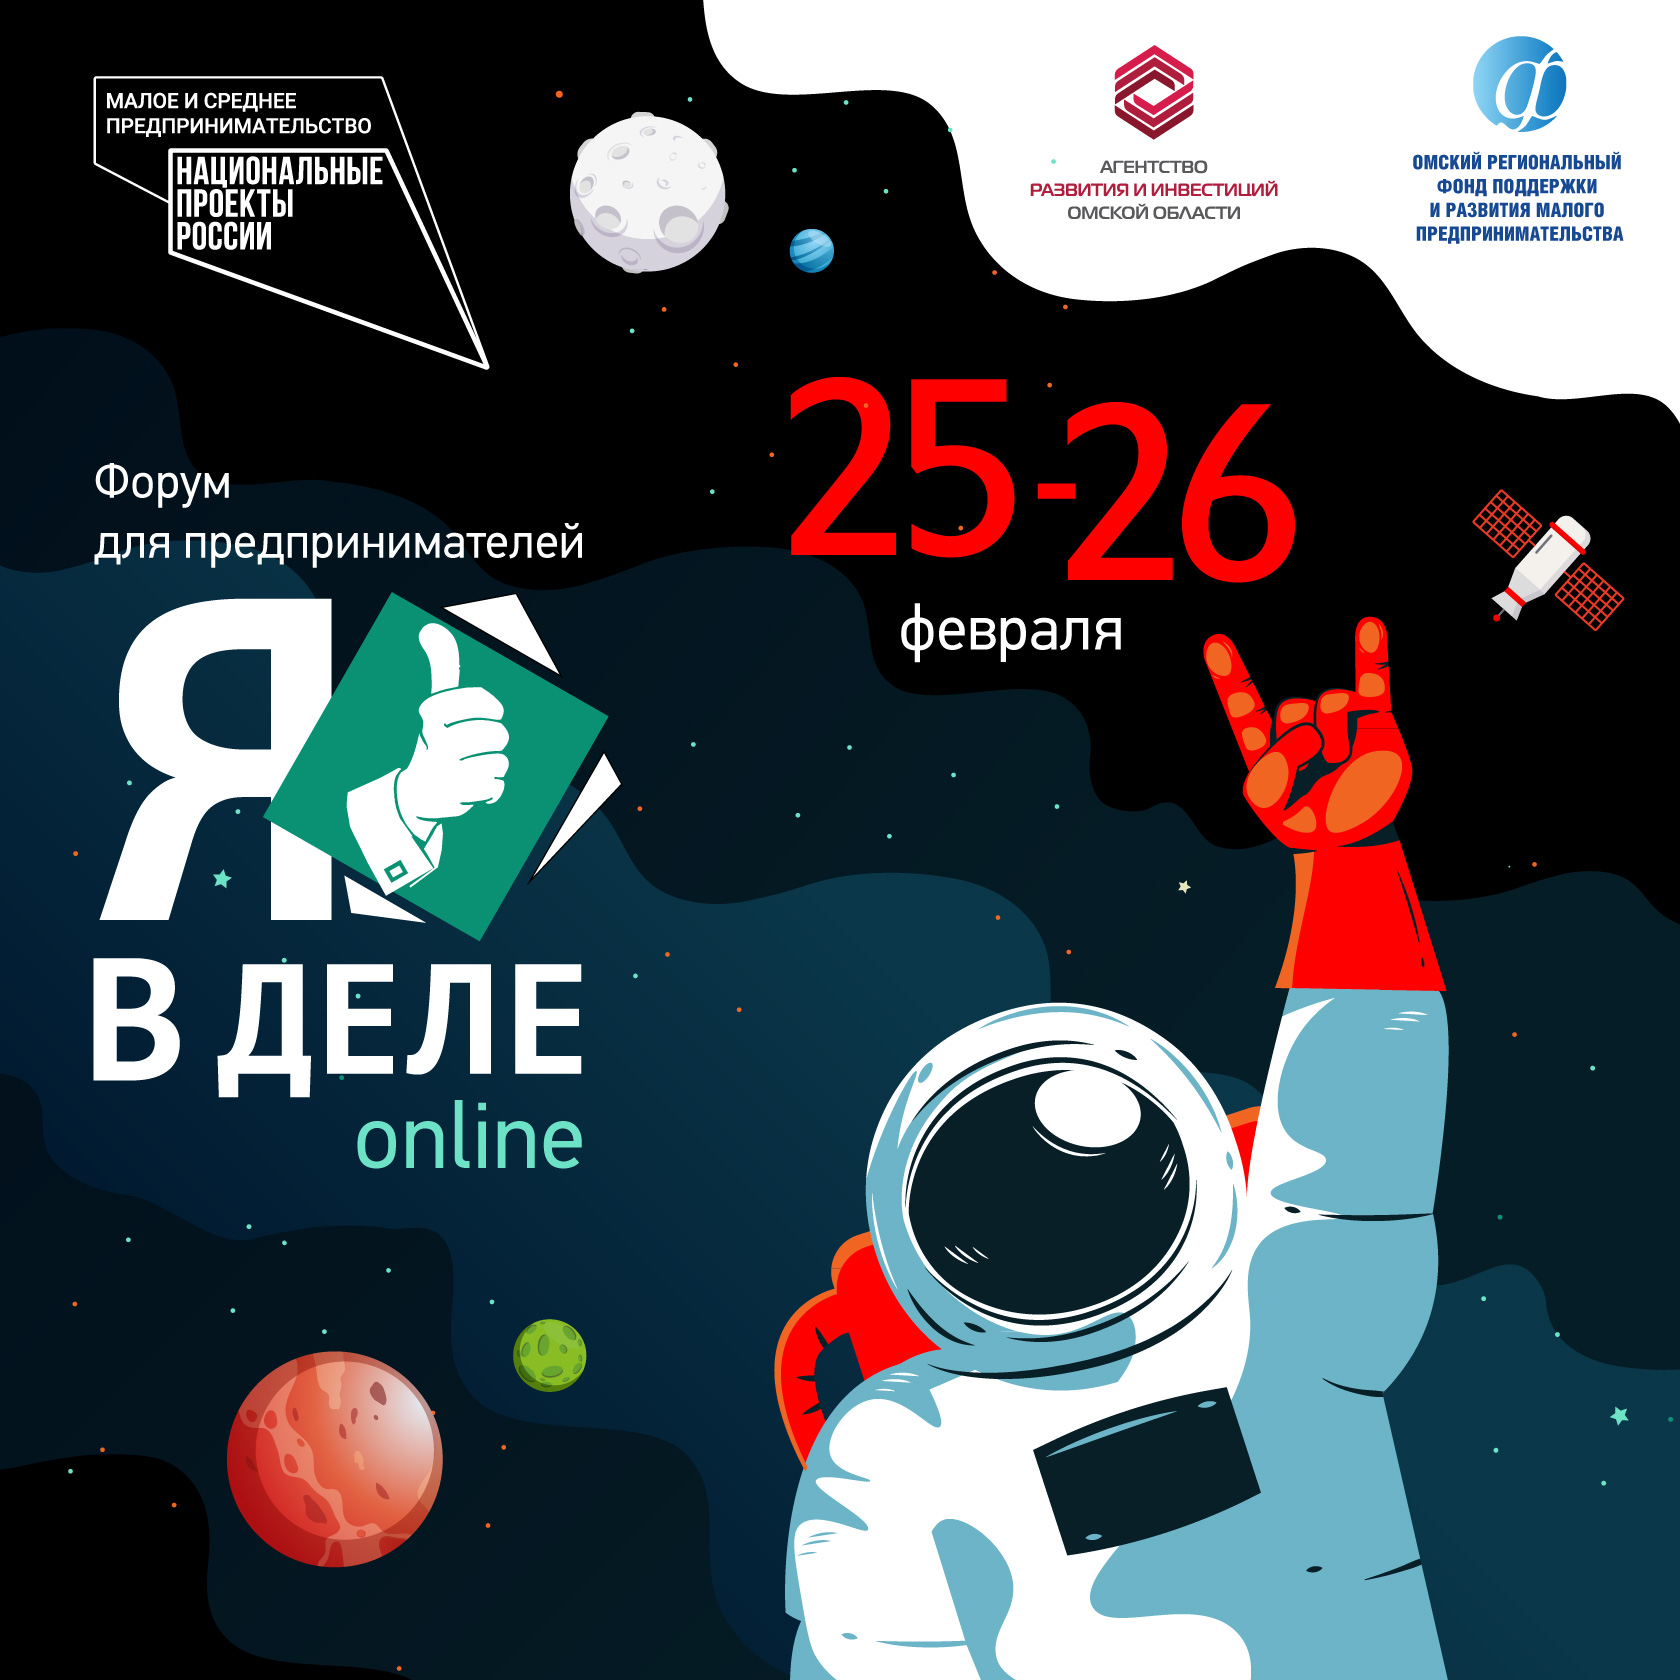 В Омской области пройдет онлайн-форум по проектному управлению